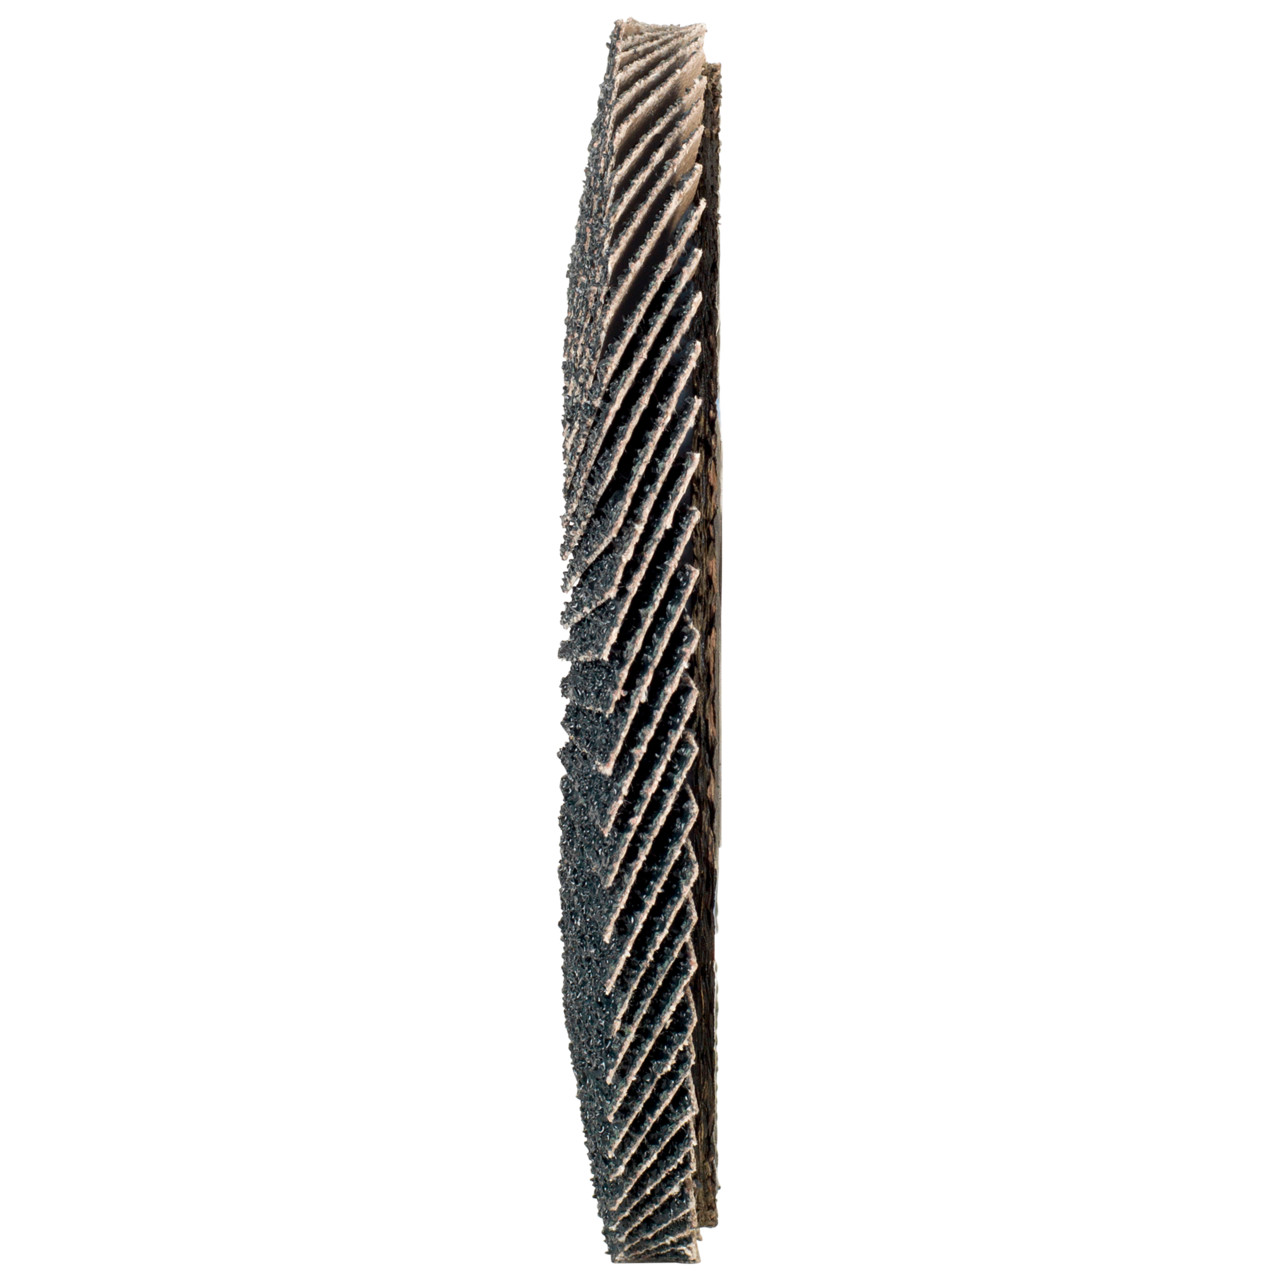 Tyrolit Arandela dentada DxH 115x22,2 2en1 para acero y acero inoxidable, P120, forma: 27A - versión con manivela (versión con cuerpo de soporte de fibra de vidrio), Art. 643803